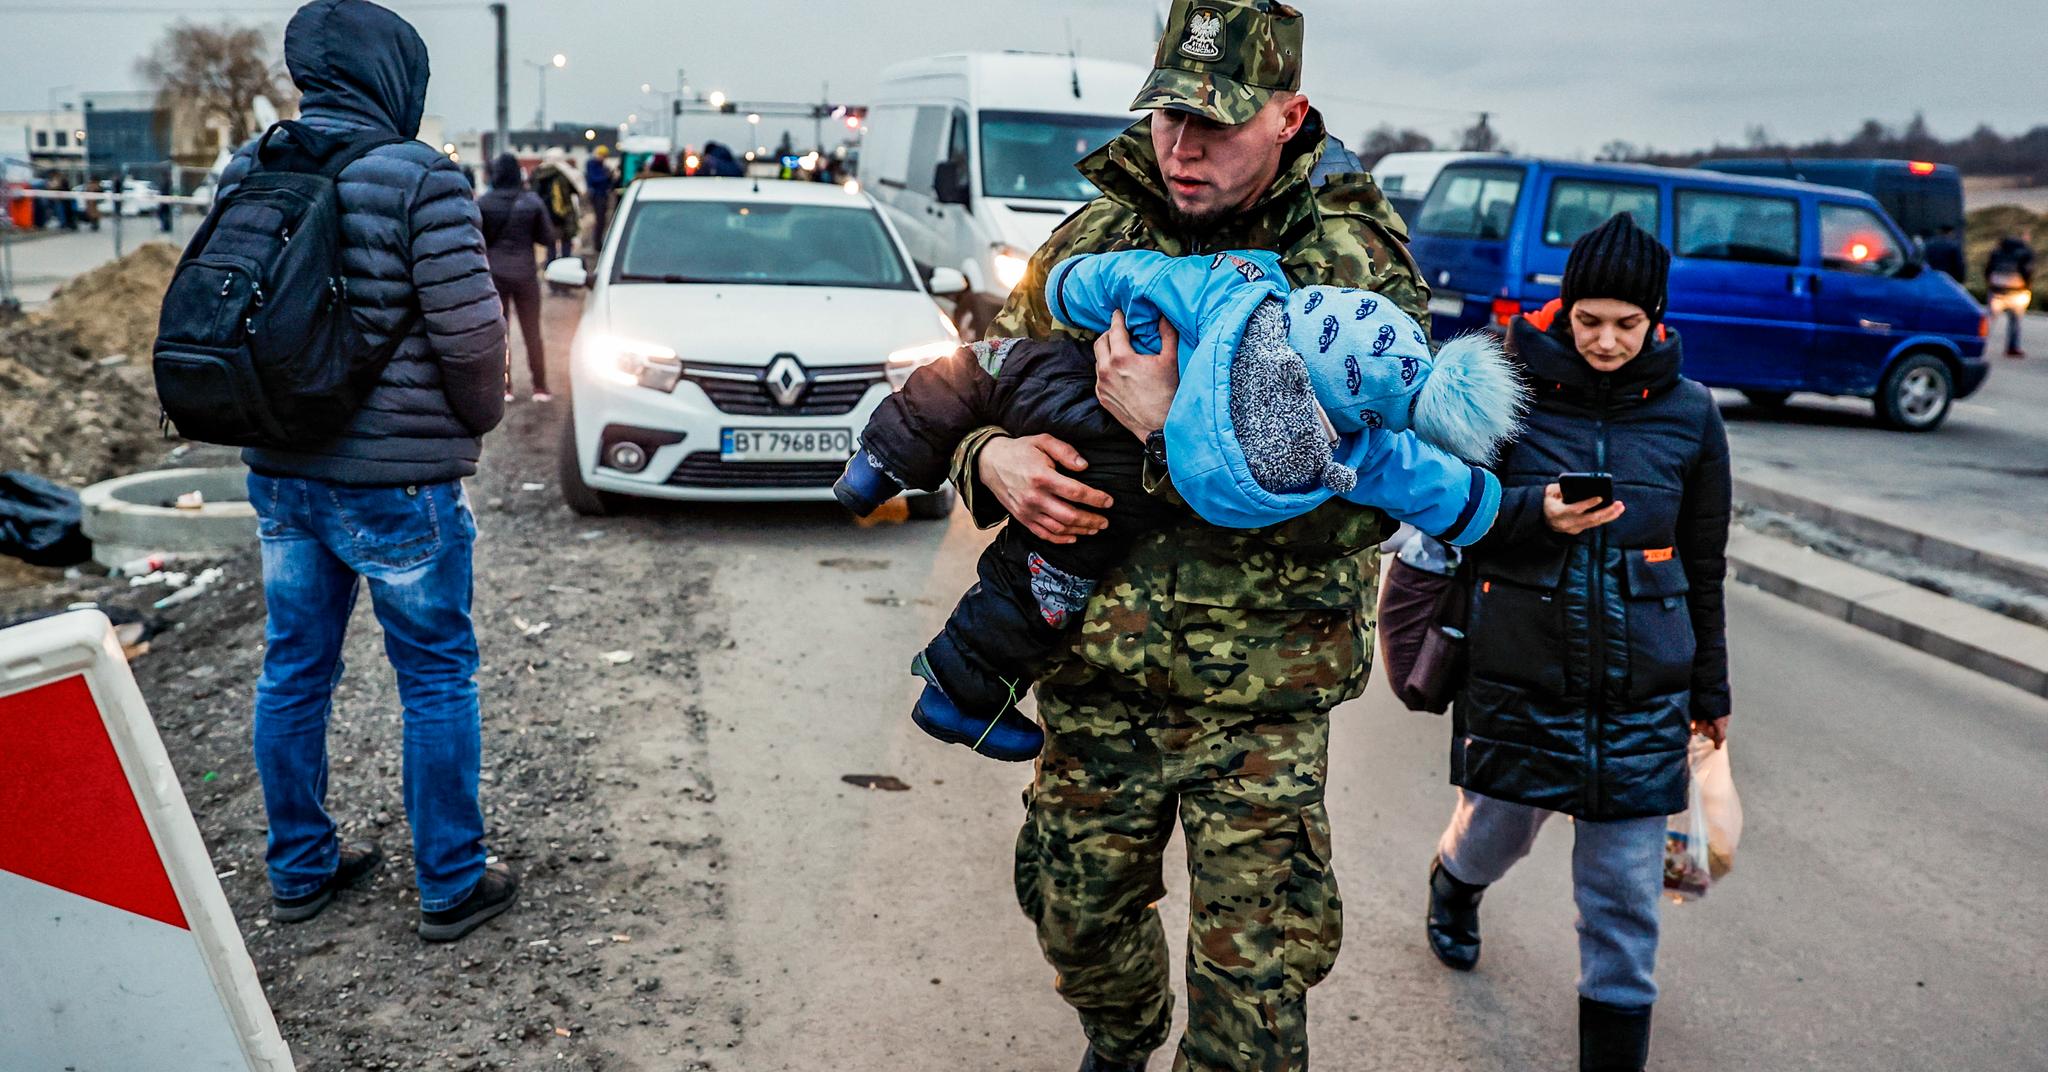 Halvannen million flyktninger har tatt seg over grensen fra Ukraina til Polen. 